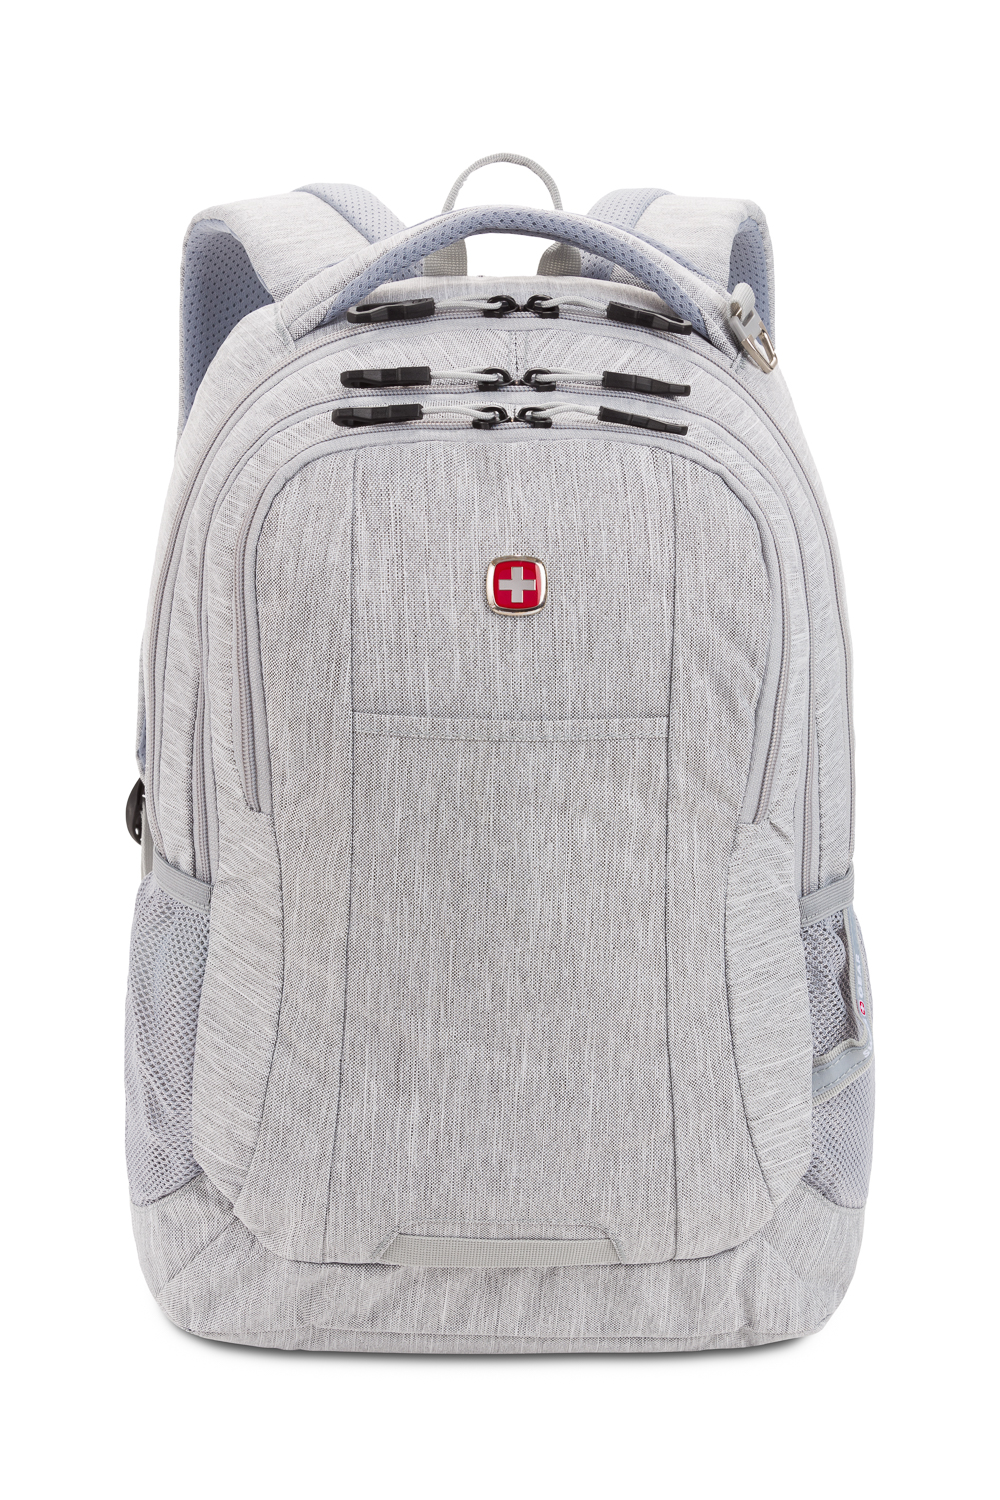 Swissgear 5505 Backpack - Light Grey Heather - Back School Backpacks